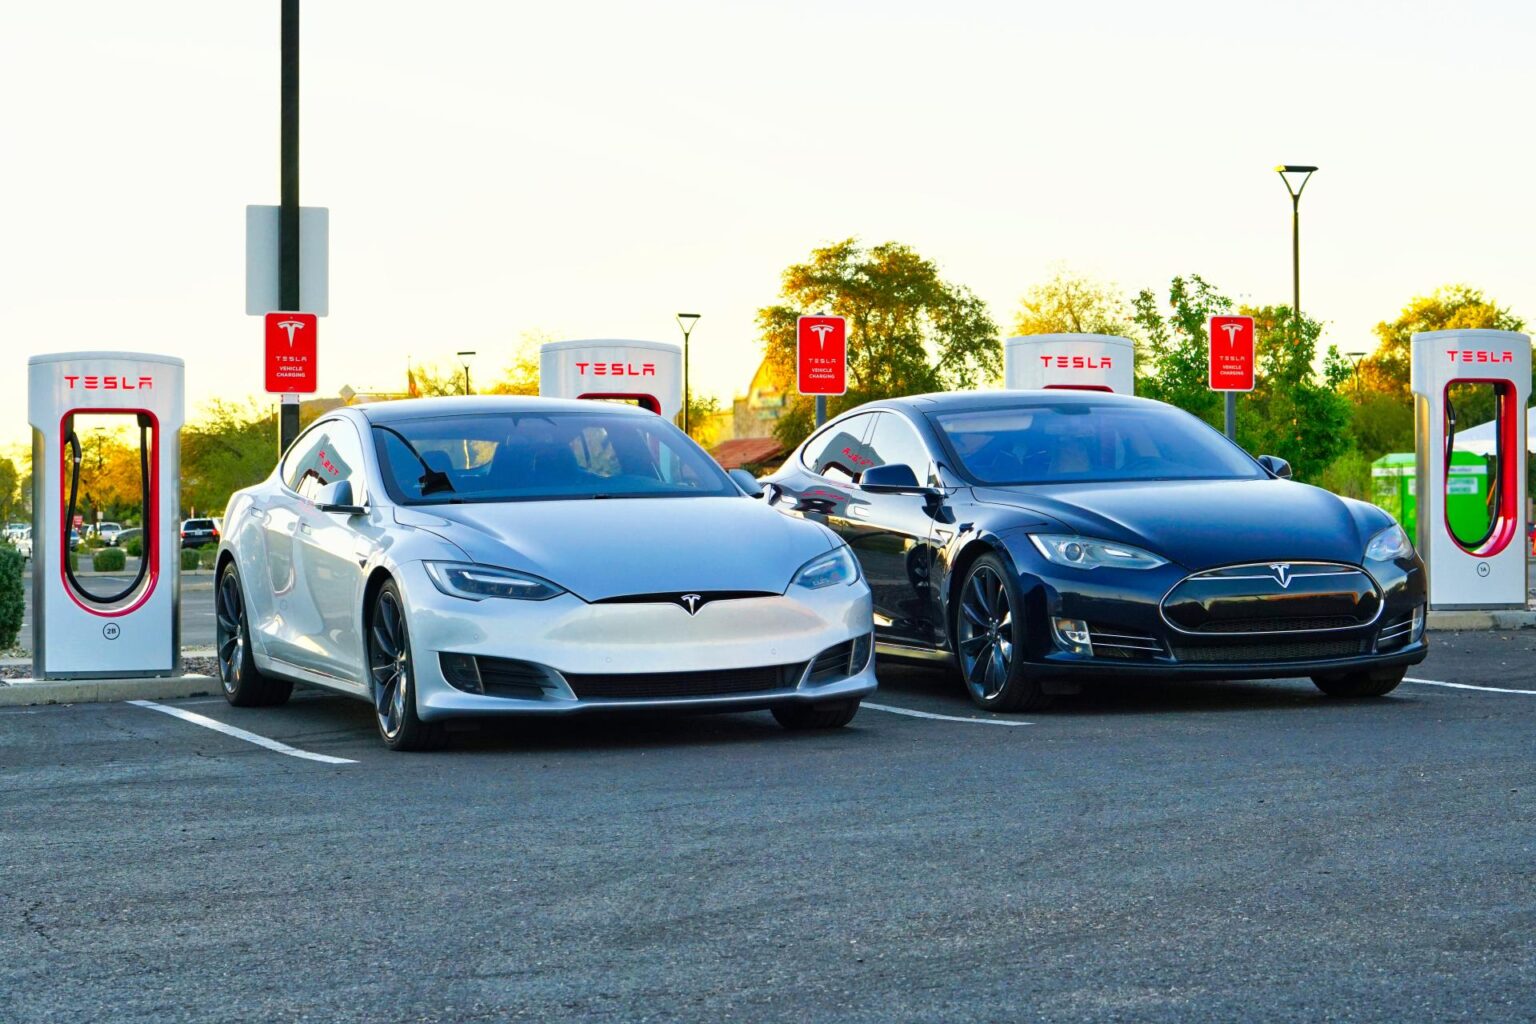 Tesla nimmt Drittanbieter-Ladestationen in Fahrzeugnavigation auf